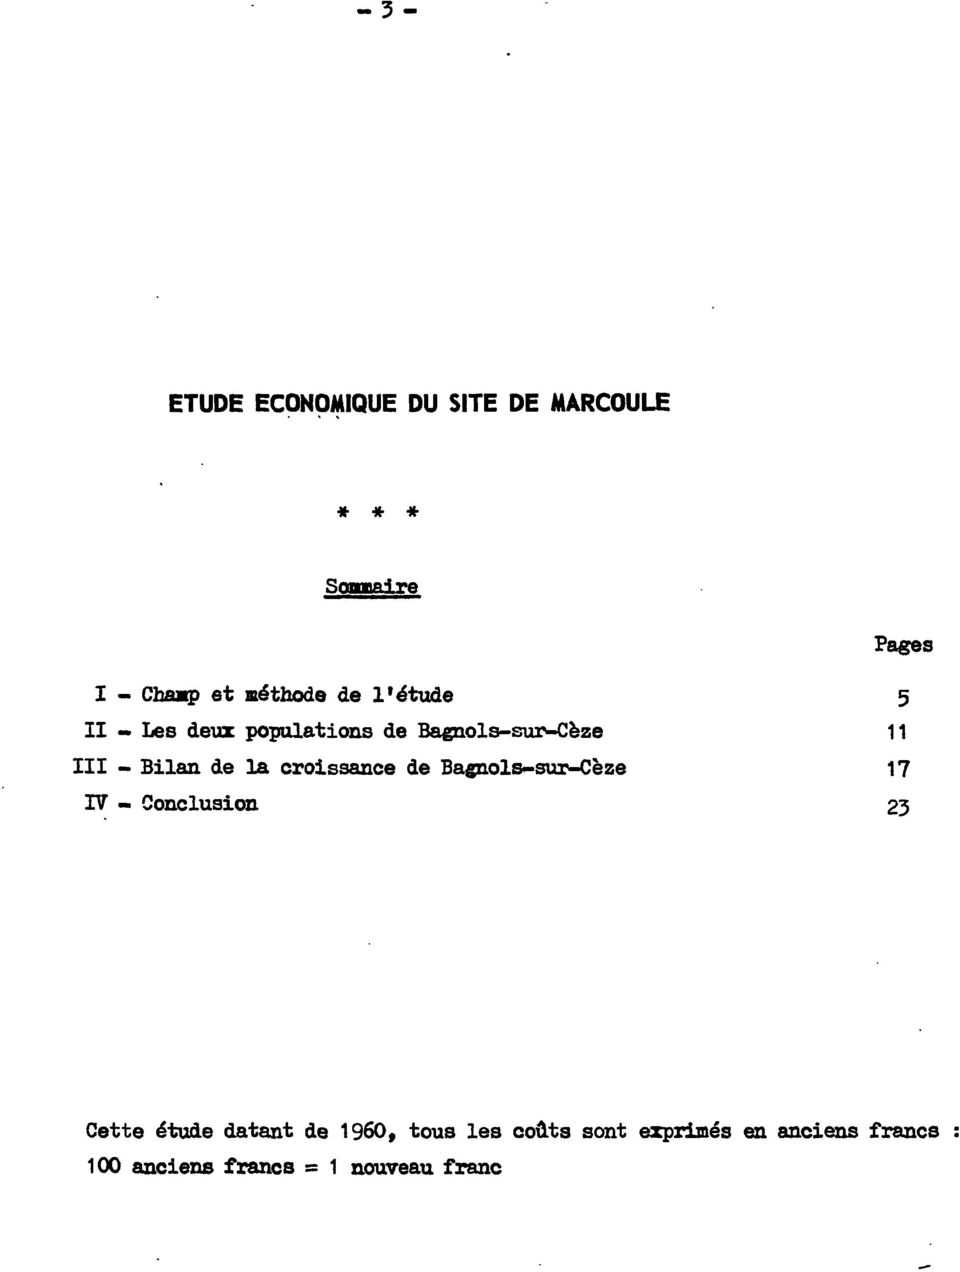 croissance de Bagnols-sur-Cèze 17 IV - Conclusion 23 Cette étude datant de 1960,